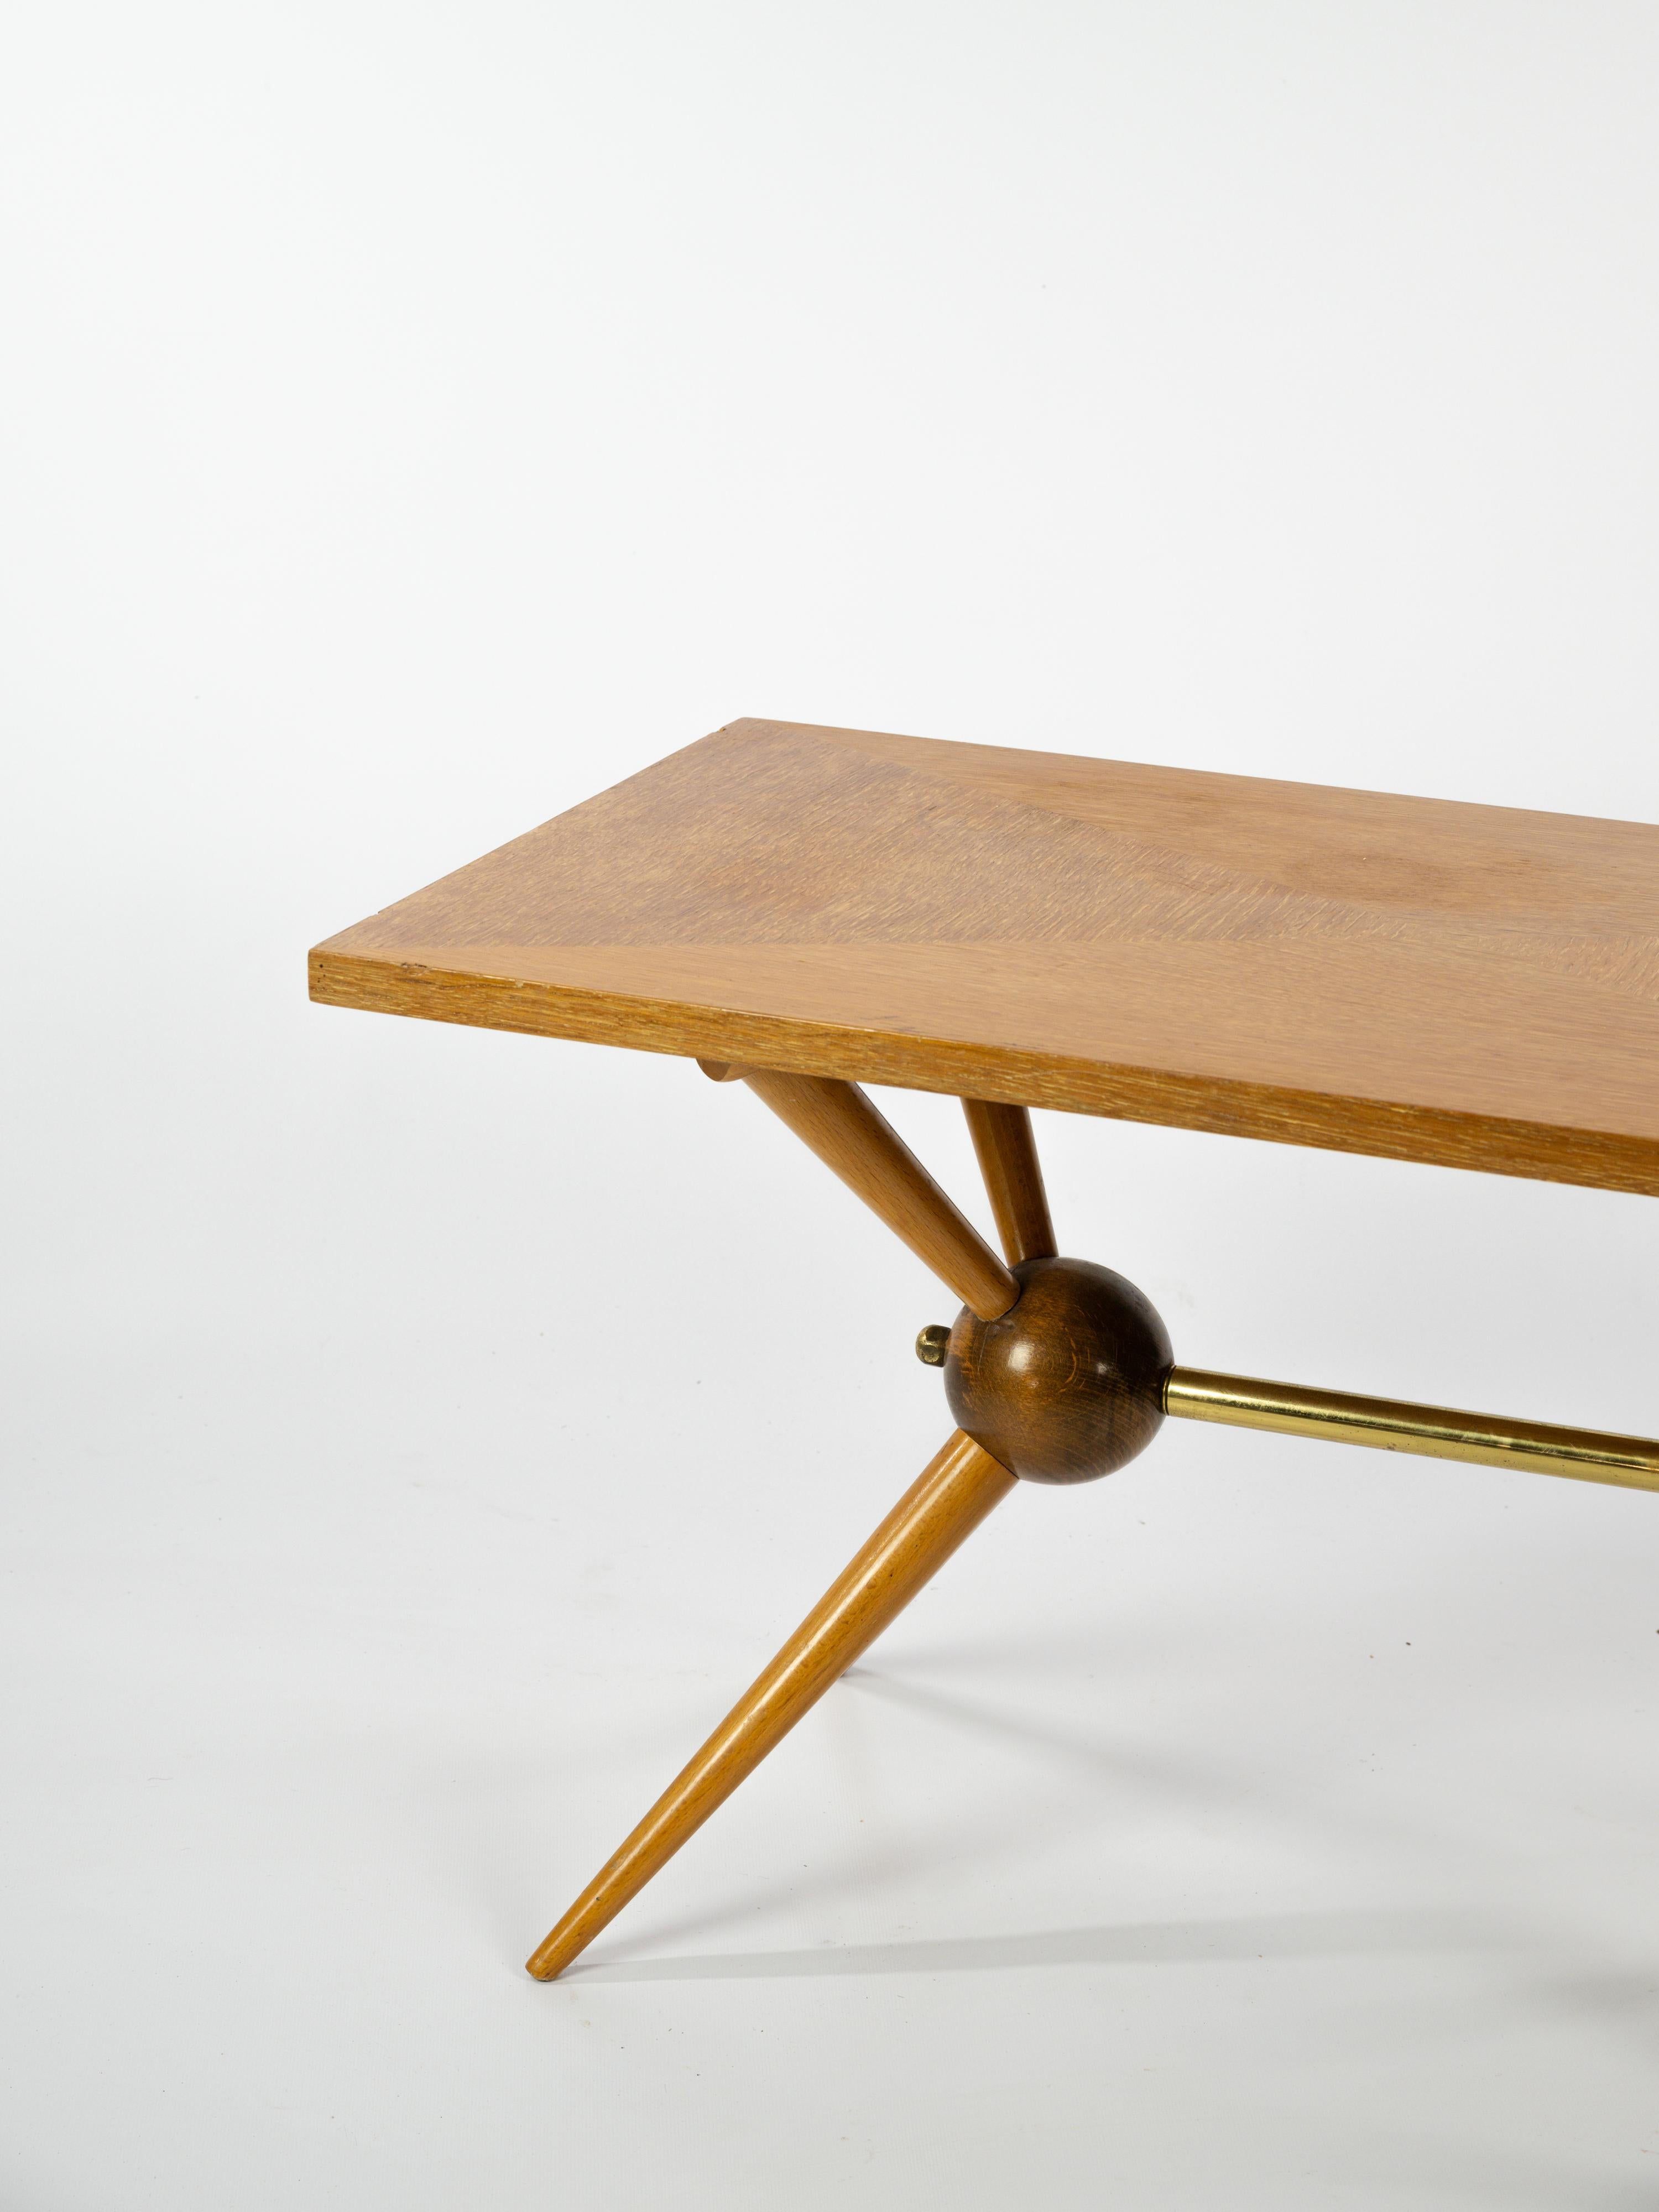 Jolie table basse en bois clair avec un magnifique plateau en placage bois. 

La forme du pied Sputnik donne un aspect unique à cette table. 

Les détails en laiton sont typiques de la période du milieu du siècle. 

Ouvrage français vers 1960.